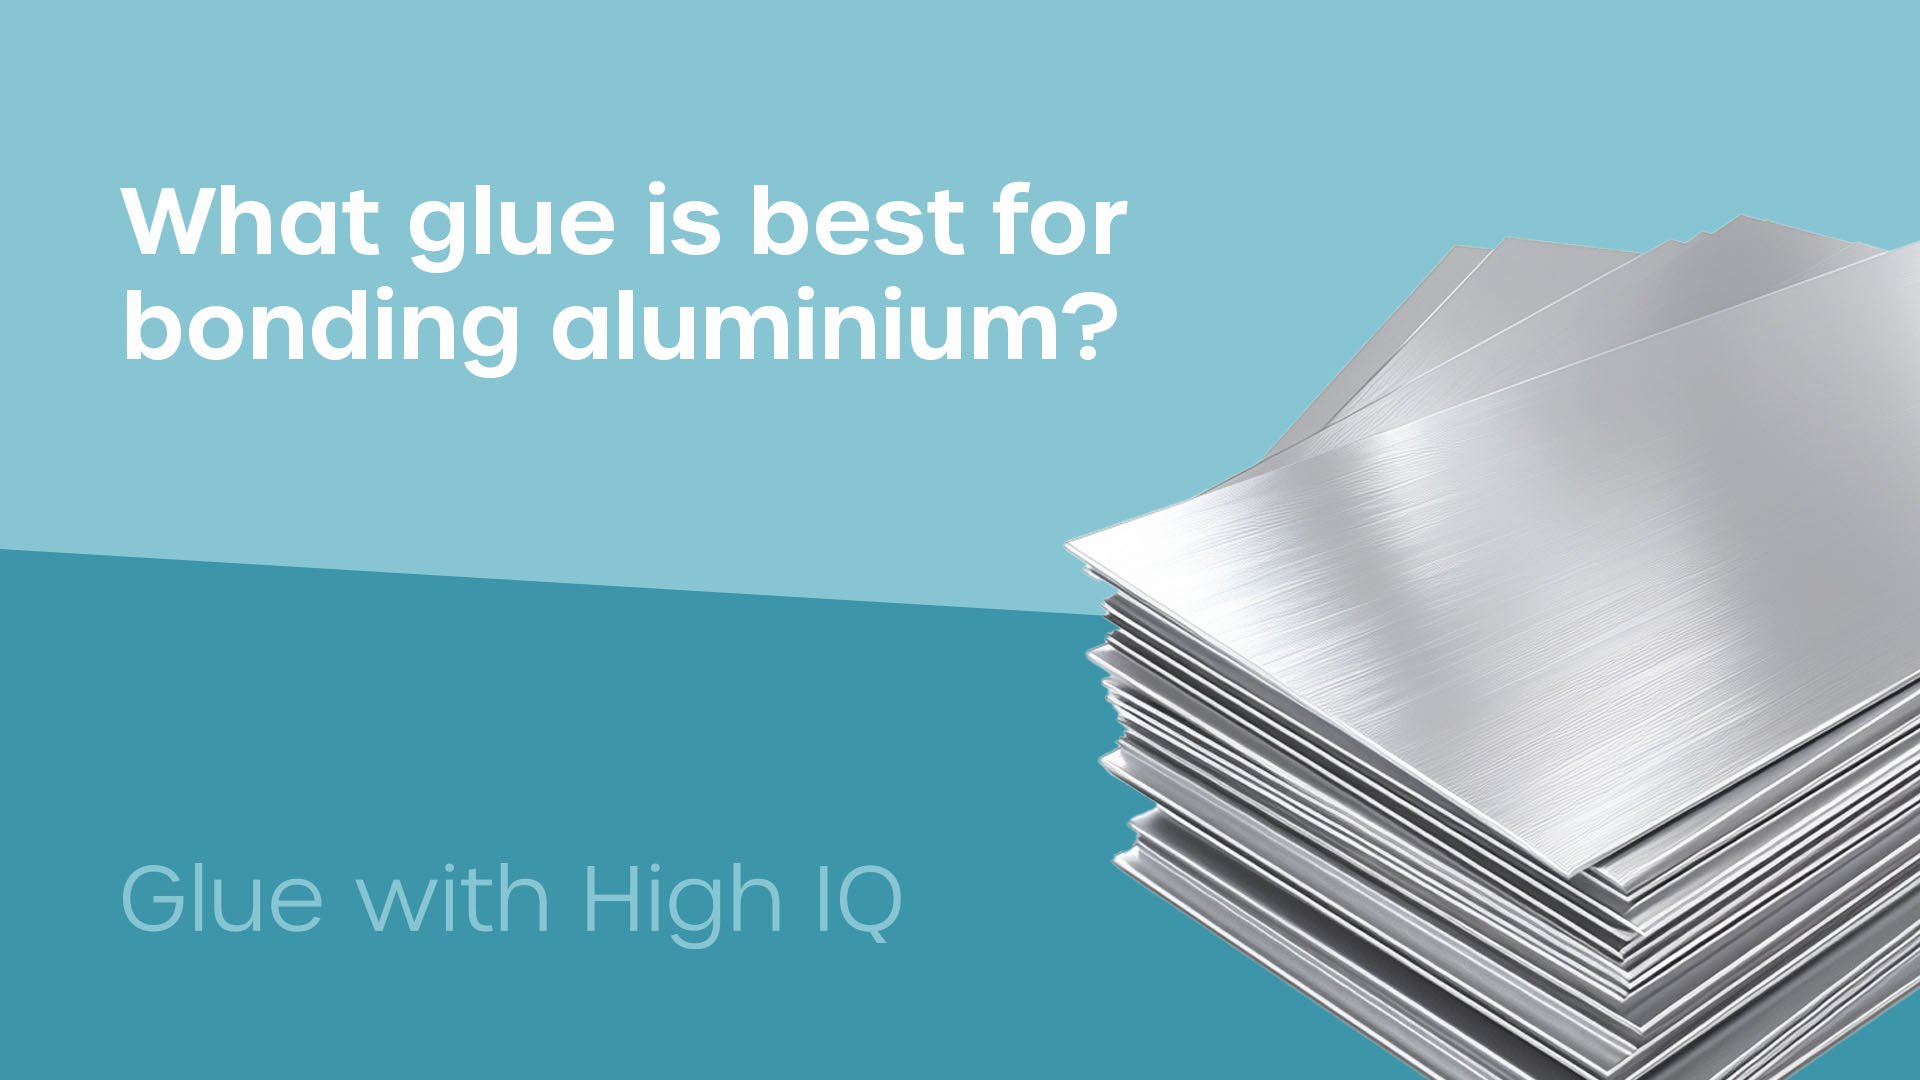 Best glue for bonding aluminium?